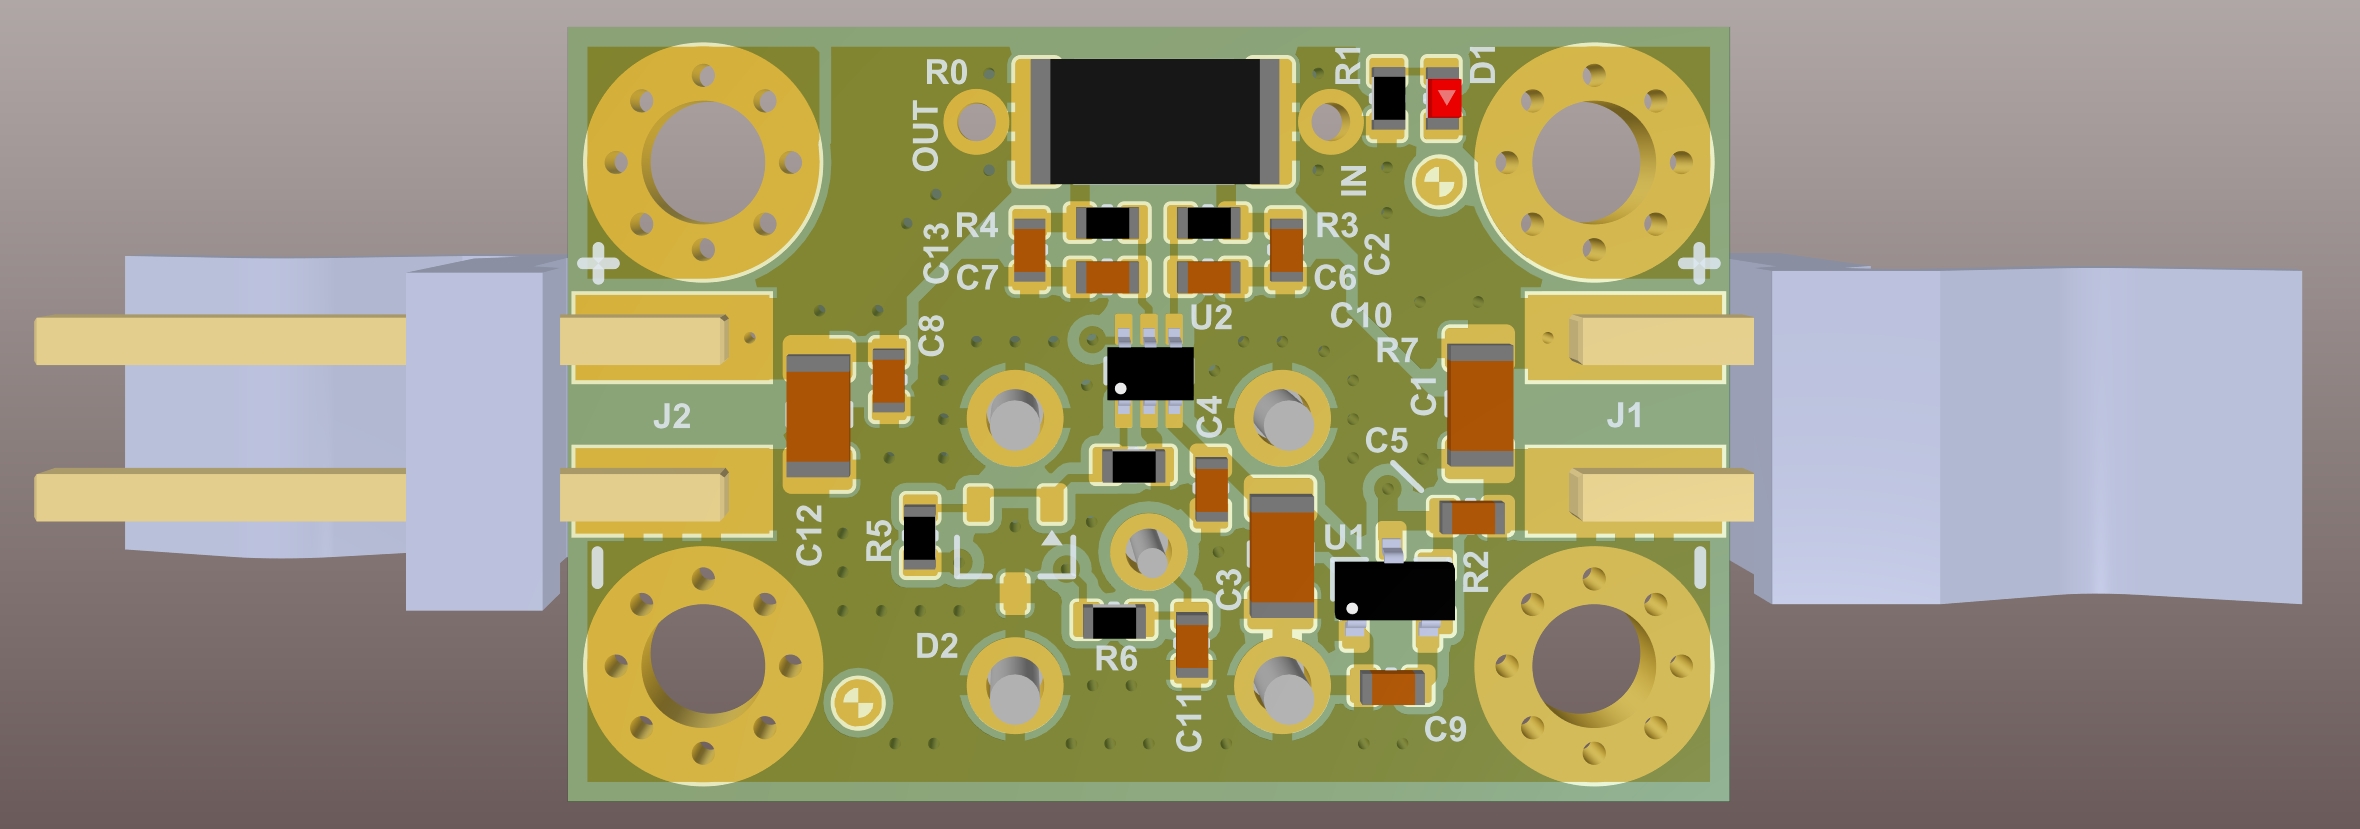 Current sensor PCB